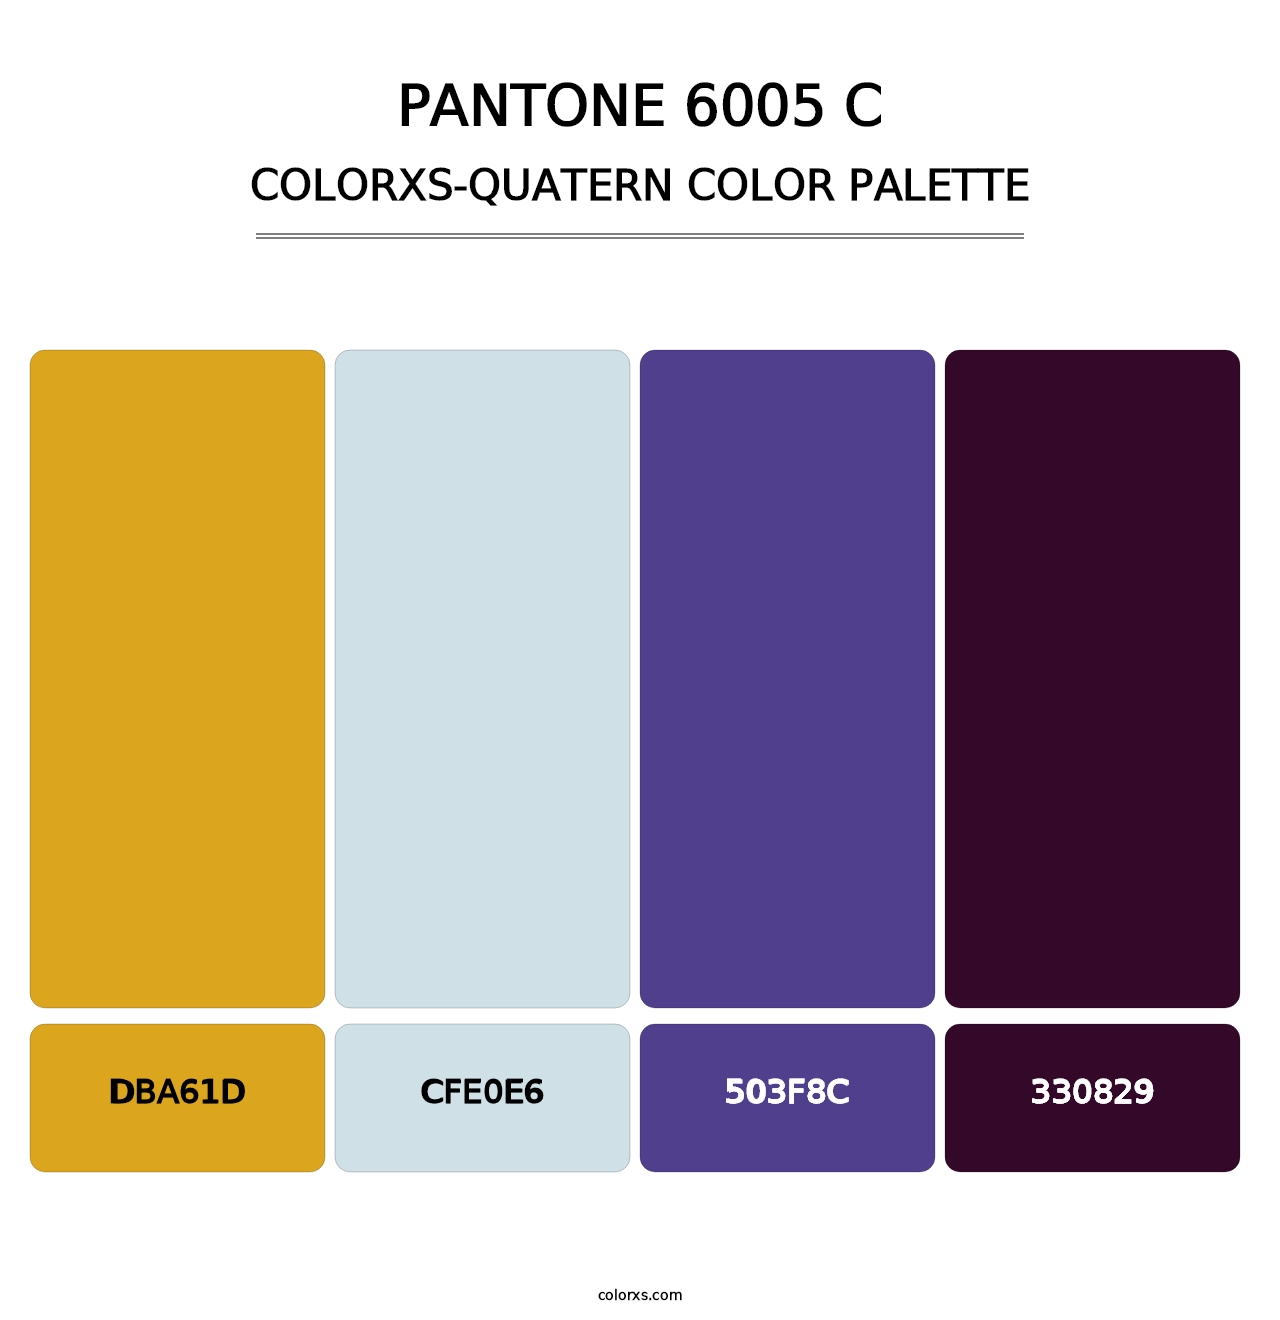 PANTONE 6005 C - Colorxs Quatern Palette